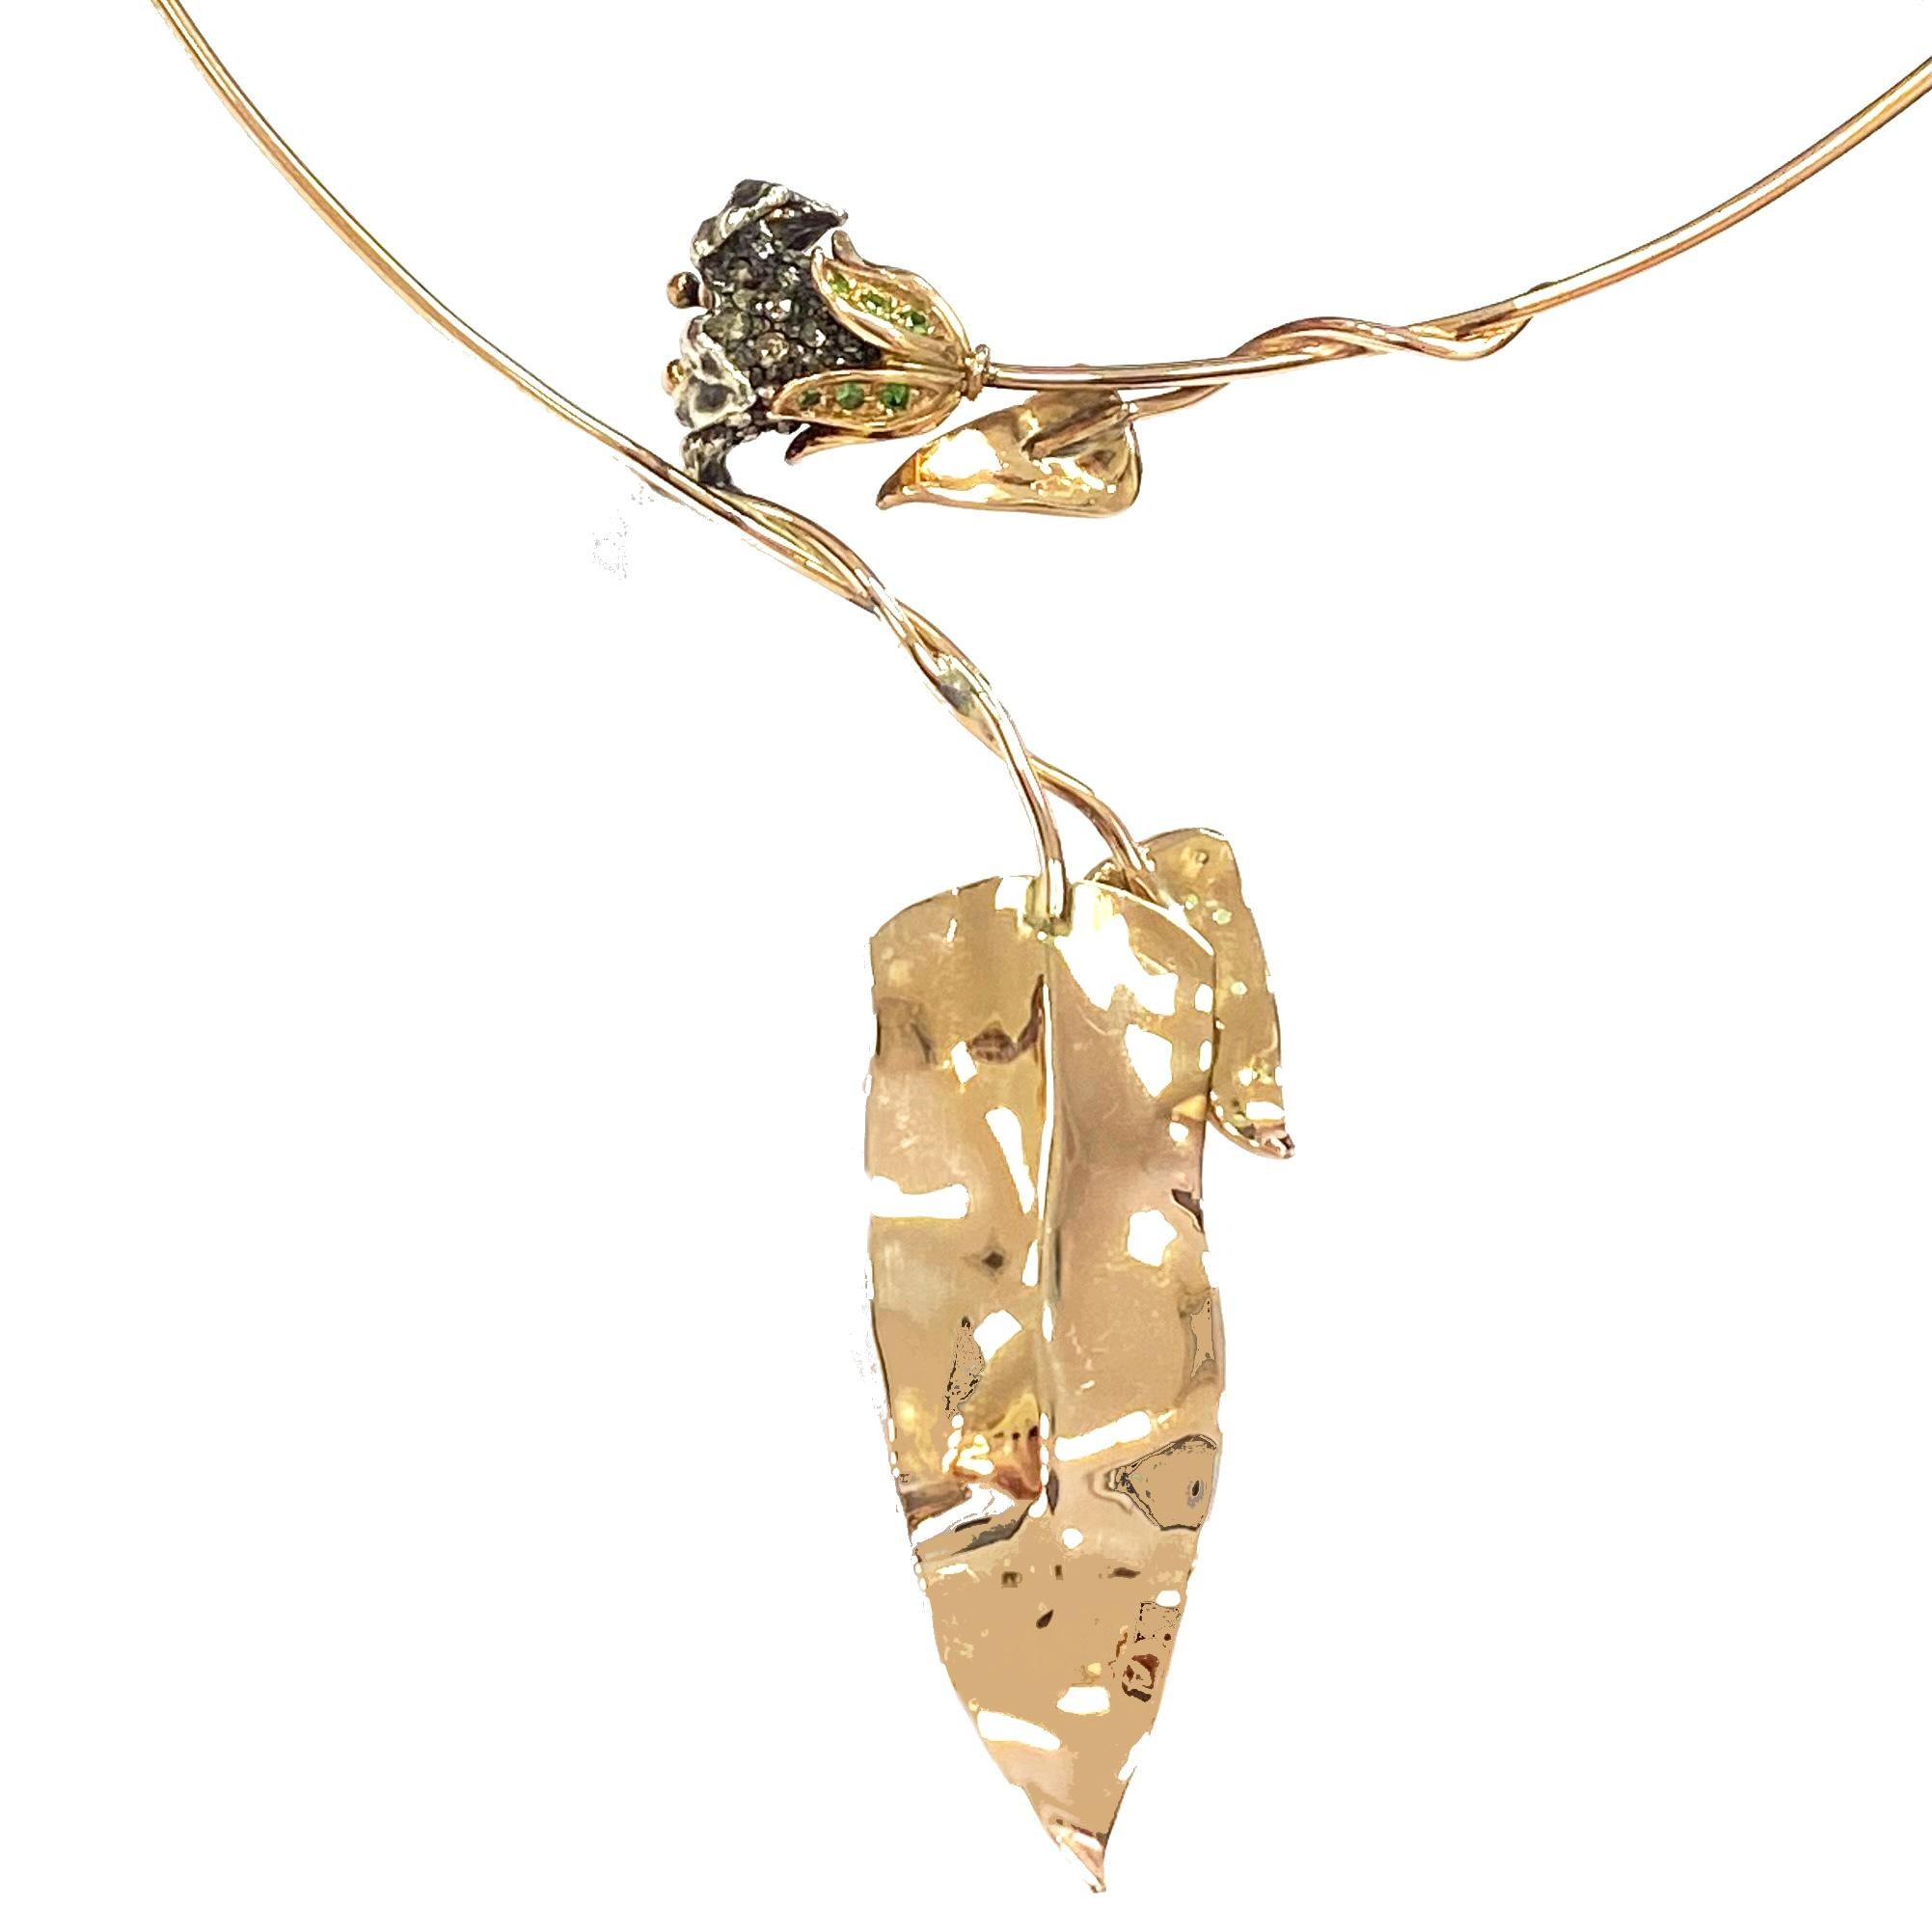 Célébrez le printemps avec ce collier asymétrique discret et élégant en or rose 9 carats et argent 925, qui est aussi fascinant lorsqu'il est porté que lorsqu'il est éteint. 

Le collier contient 2,5 carats de diamants blancs taillés en rose et